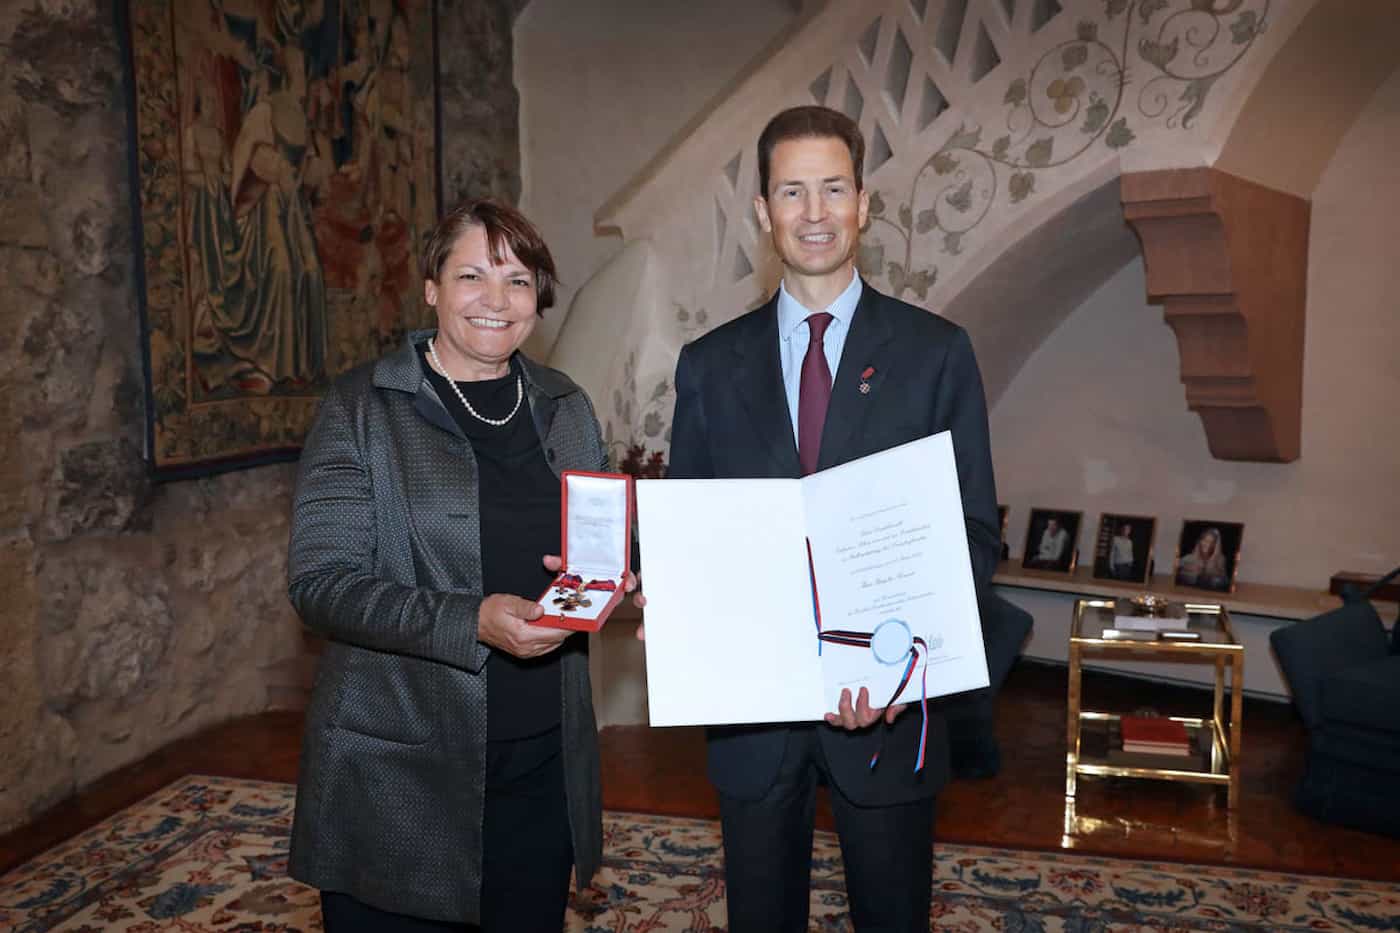 Brigitte Marxer bekommt für ihre Verdienste im Bereich des Sports für Menschen mit Beeinträchtigungen in Liechtenstein das Komturkreuz des Fürstlich Liechtensteinischen Verdienstordens von S.D. Erbprinz Alois von und zu Liechtenstein verliehen.